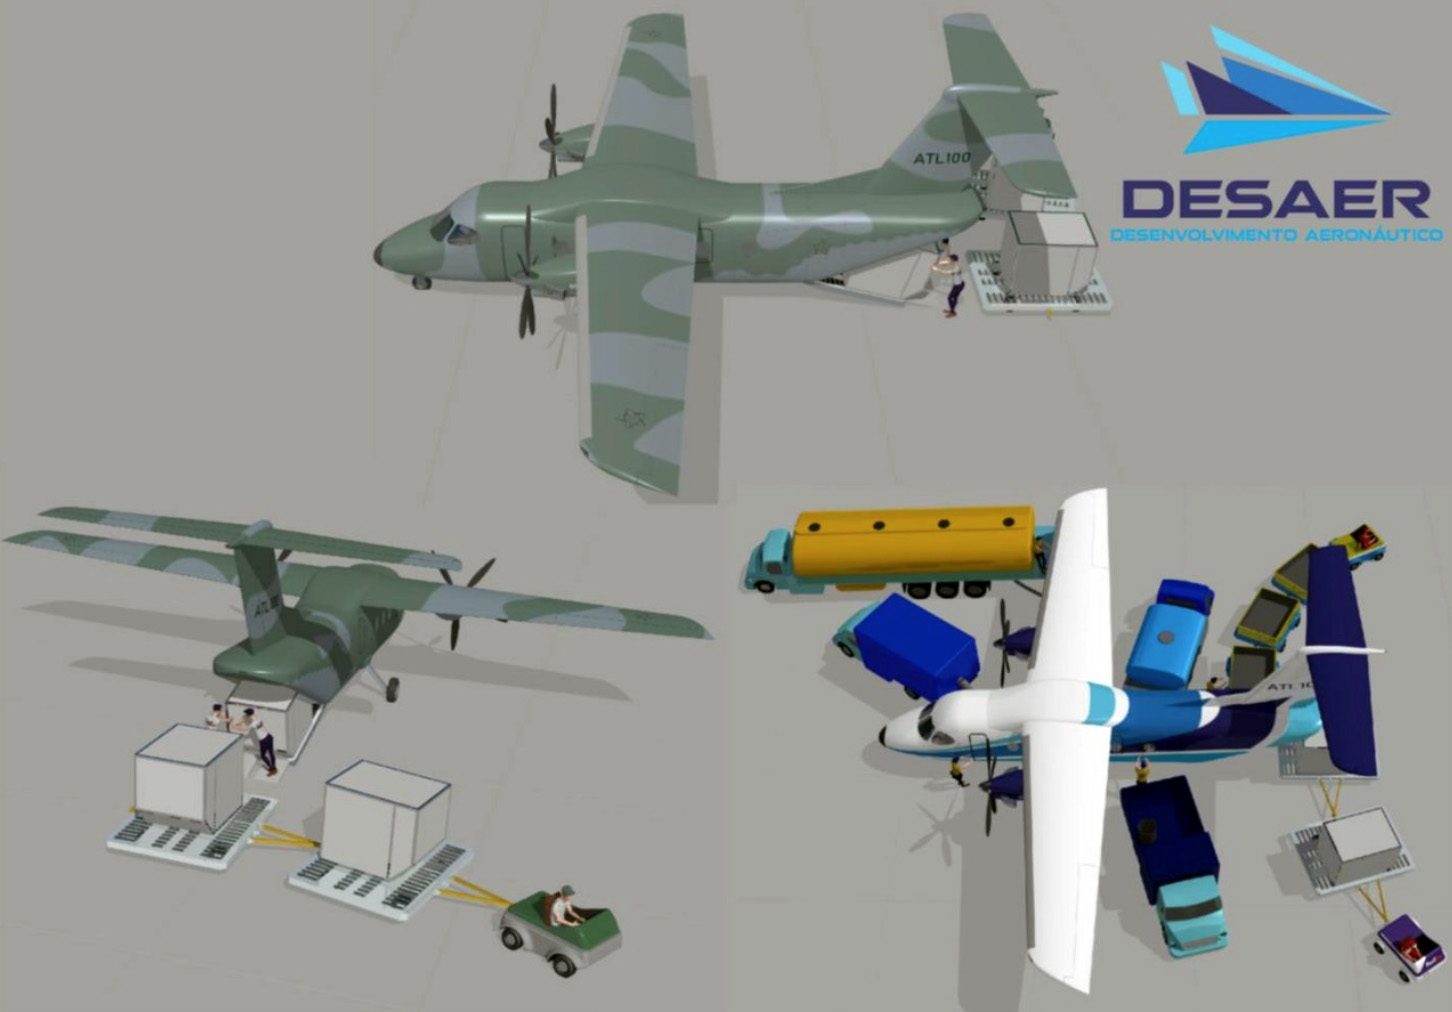 DESAER revela detalhes da versão militar do ATL-100 - Poder Aéreo - Aviação  Militar, Indústria Aeronáutica e de Defesa